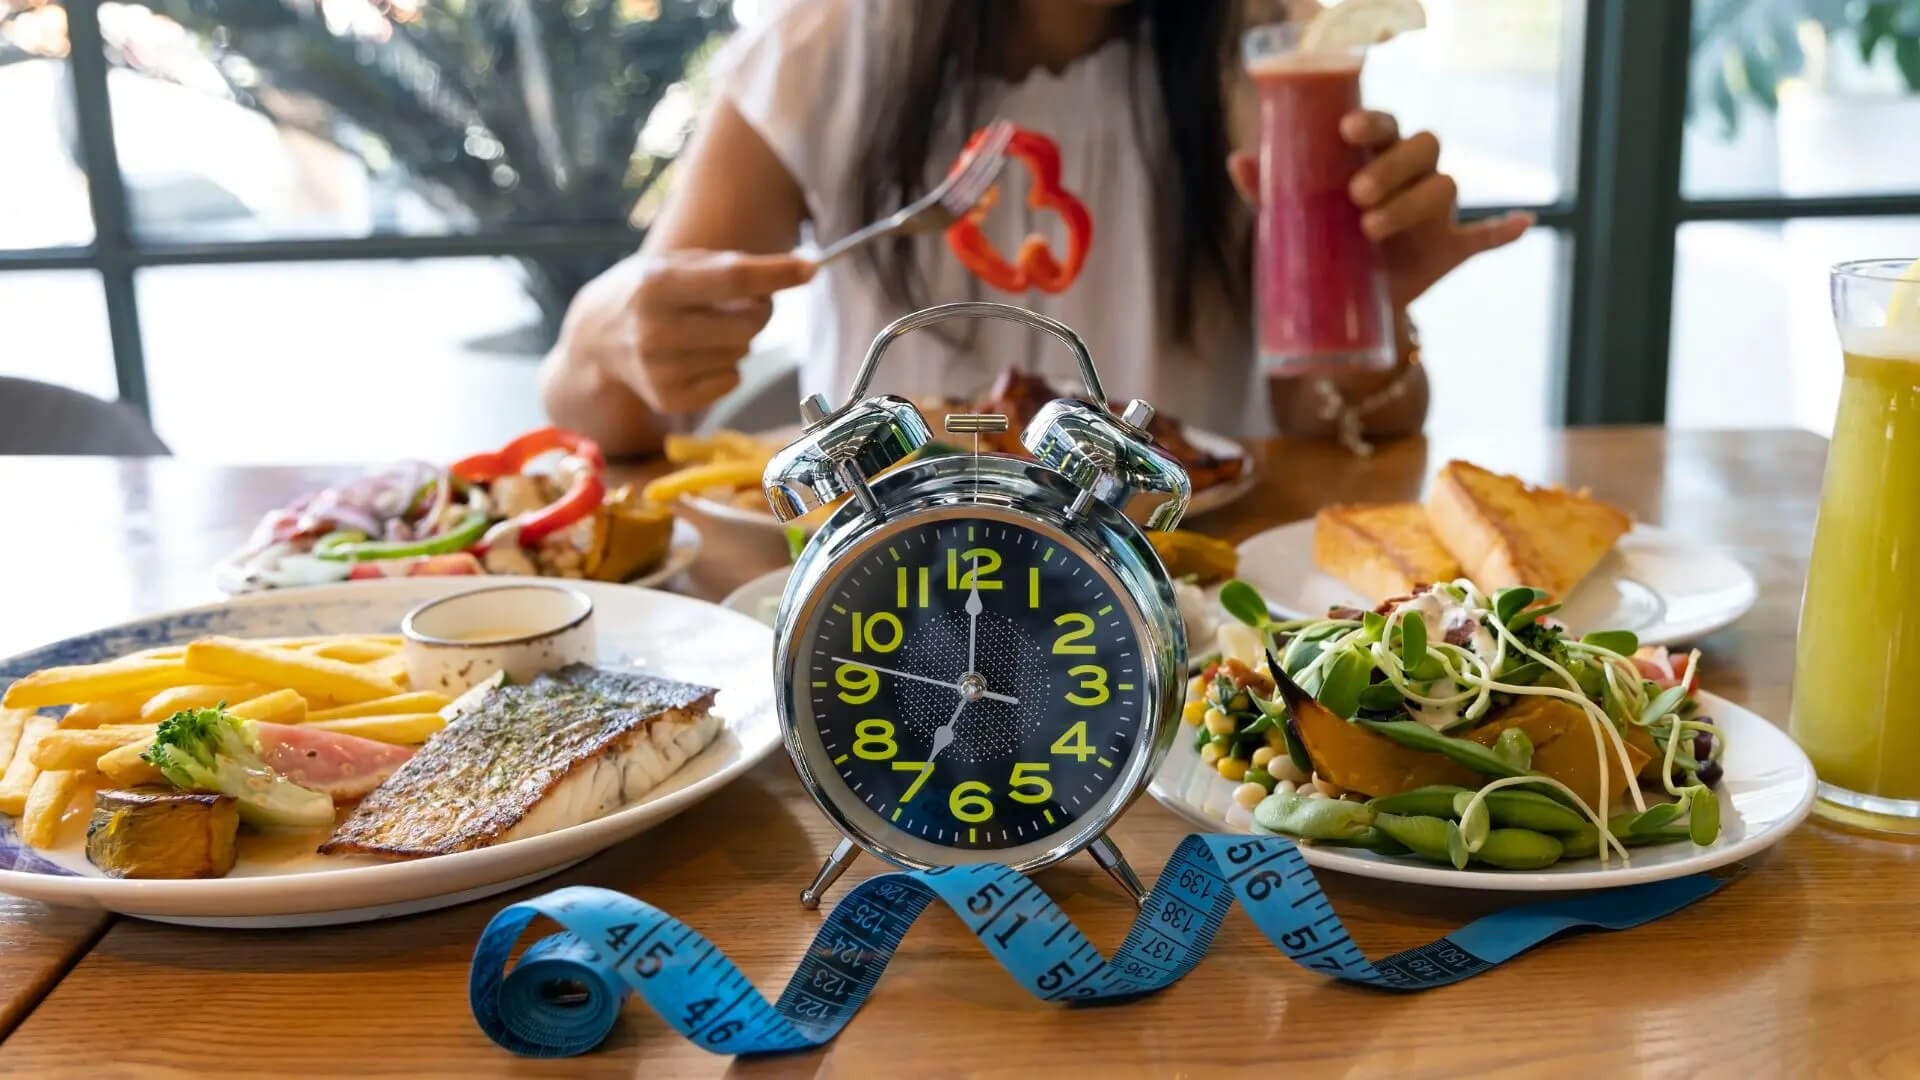 Để đảm bảo an toàn khi thực hiện nhịn ăn gián đoạn 4-4-12, hãy ăn uống cân bằng trong khung giờ cho phép.